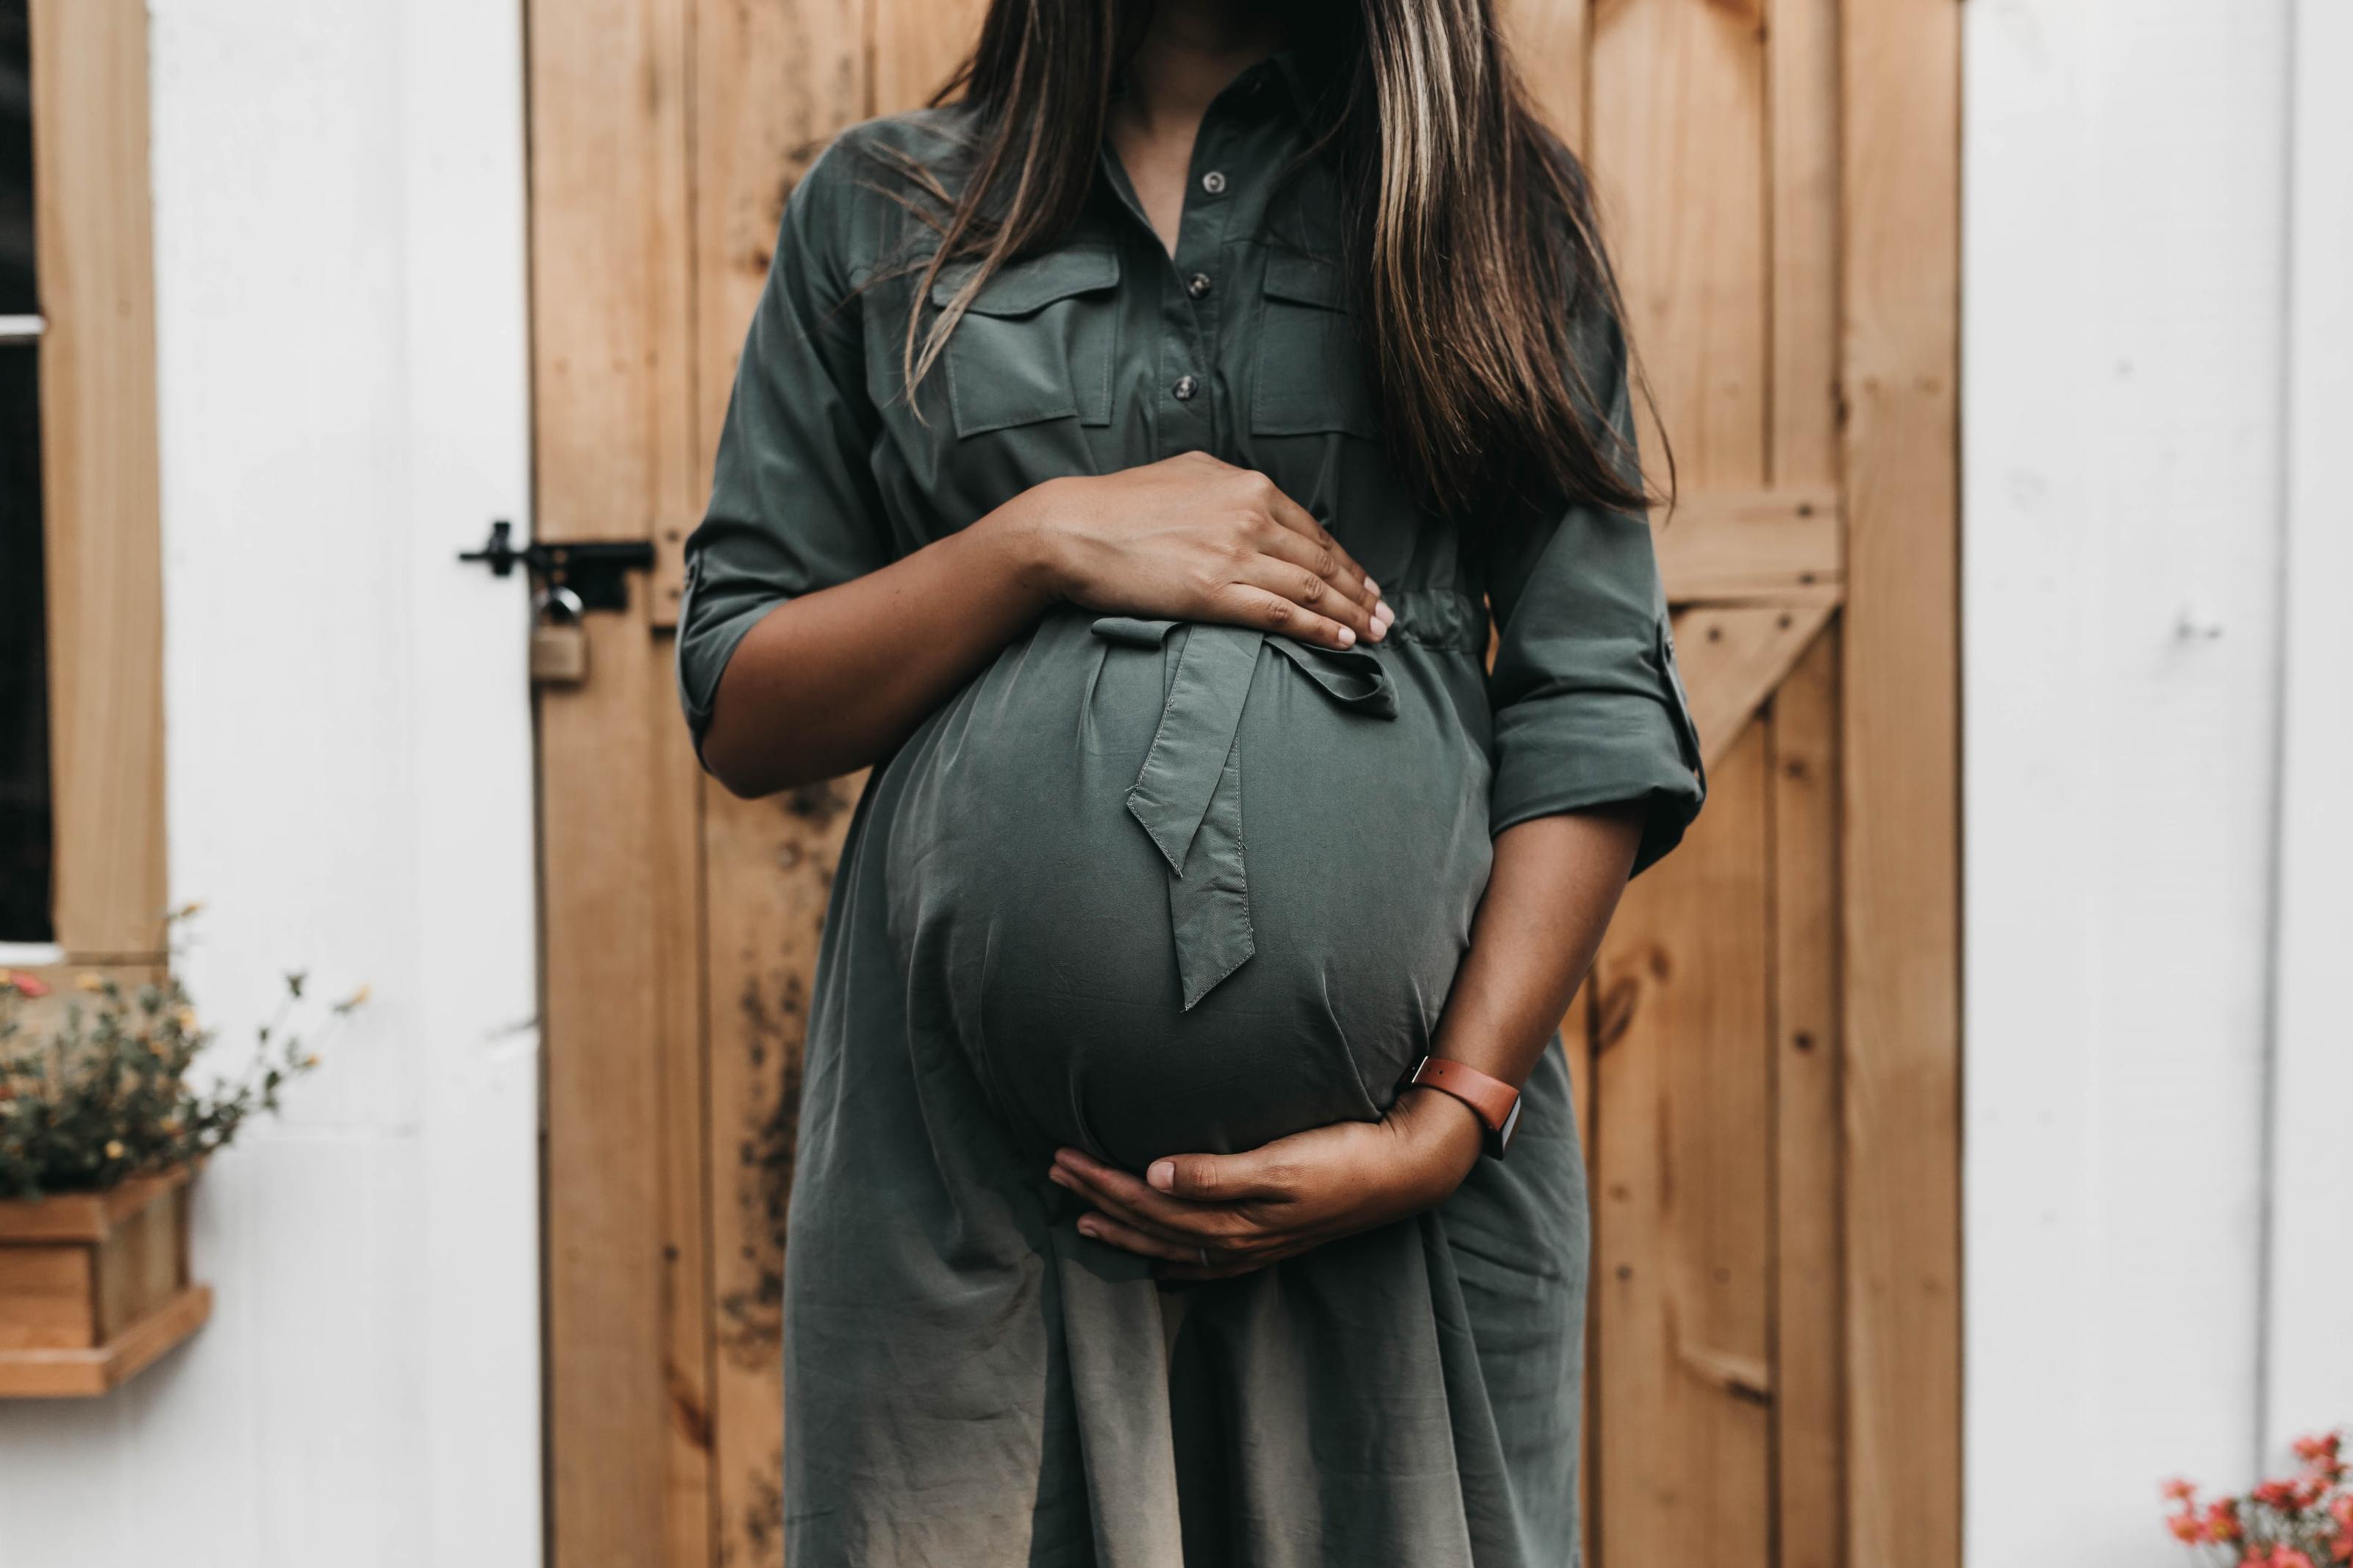 Valproate et dérivés : l’exposition des femmes enceintes a fortement diminué mais persiste